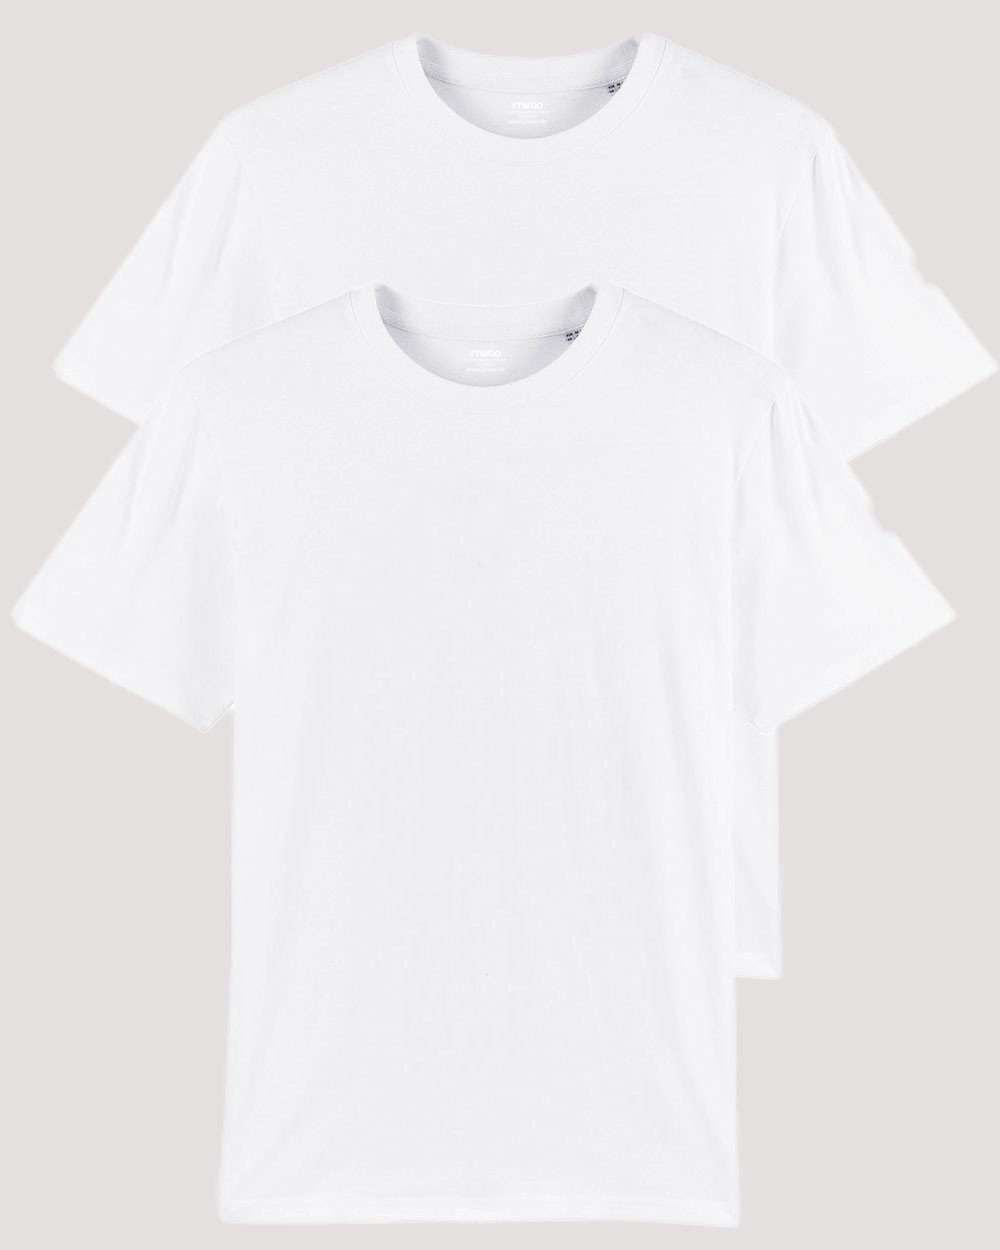 YTWOO T-Shirt 2er Pack, Männer T-Shirt Basic, schwere Bio-Baumwolle, 220g/m² Weiß